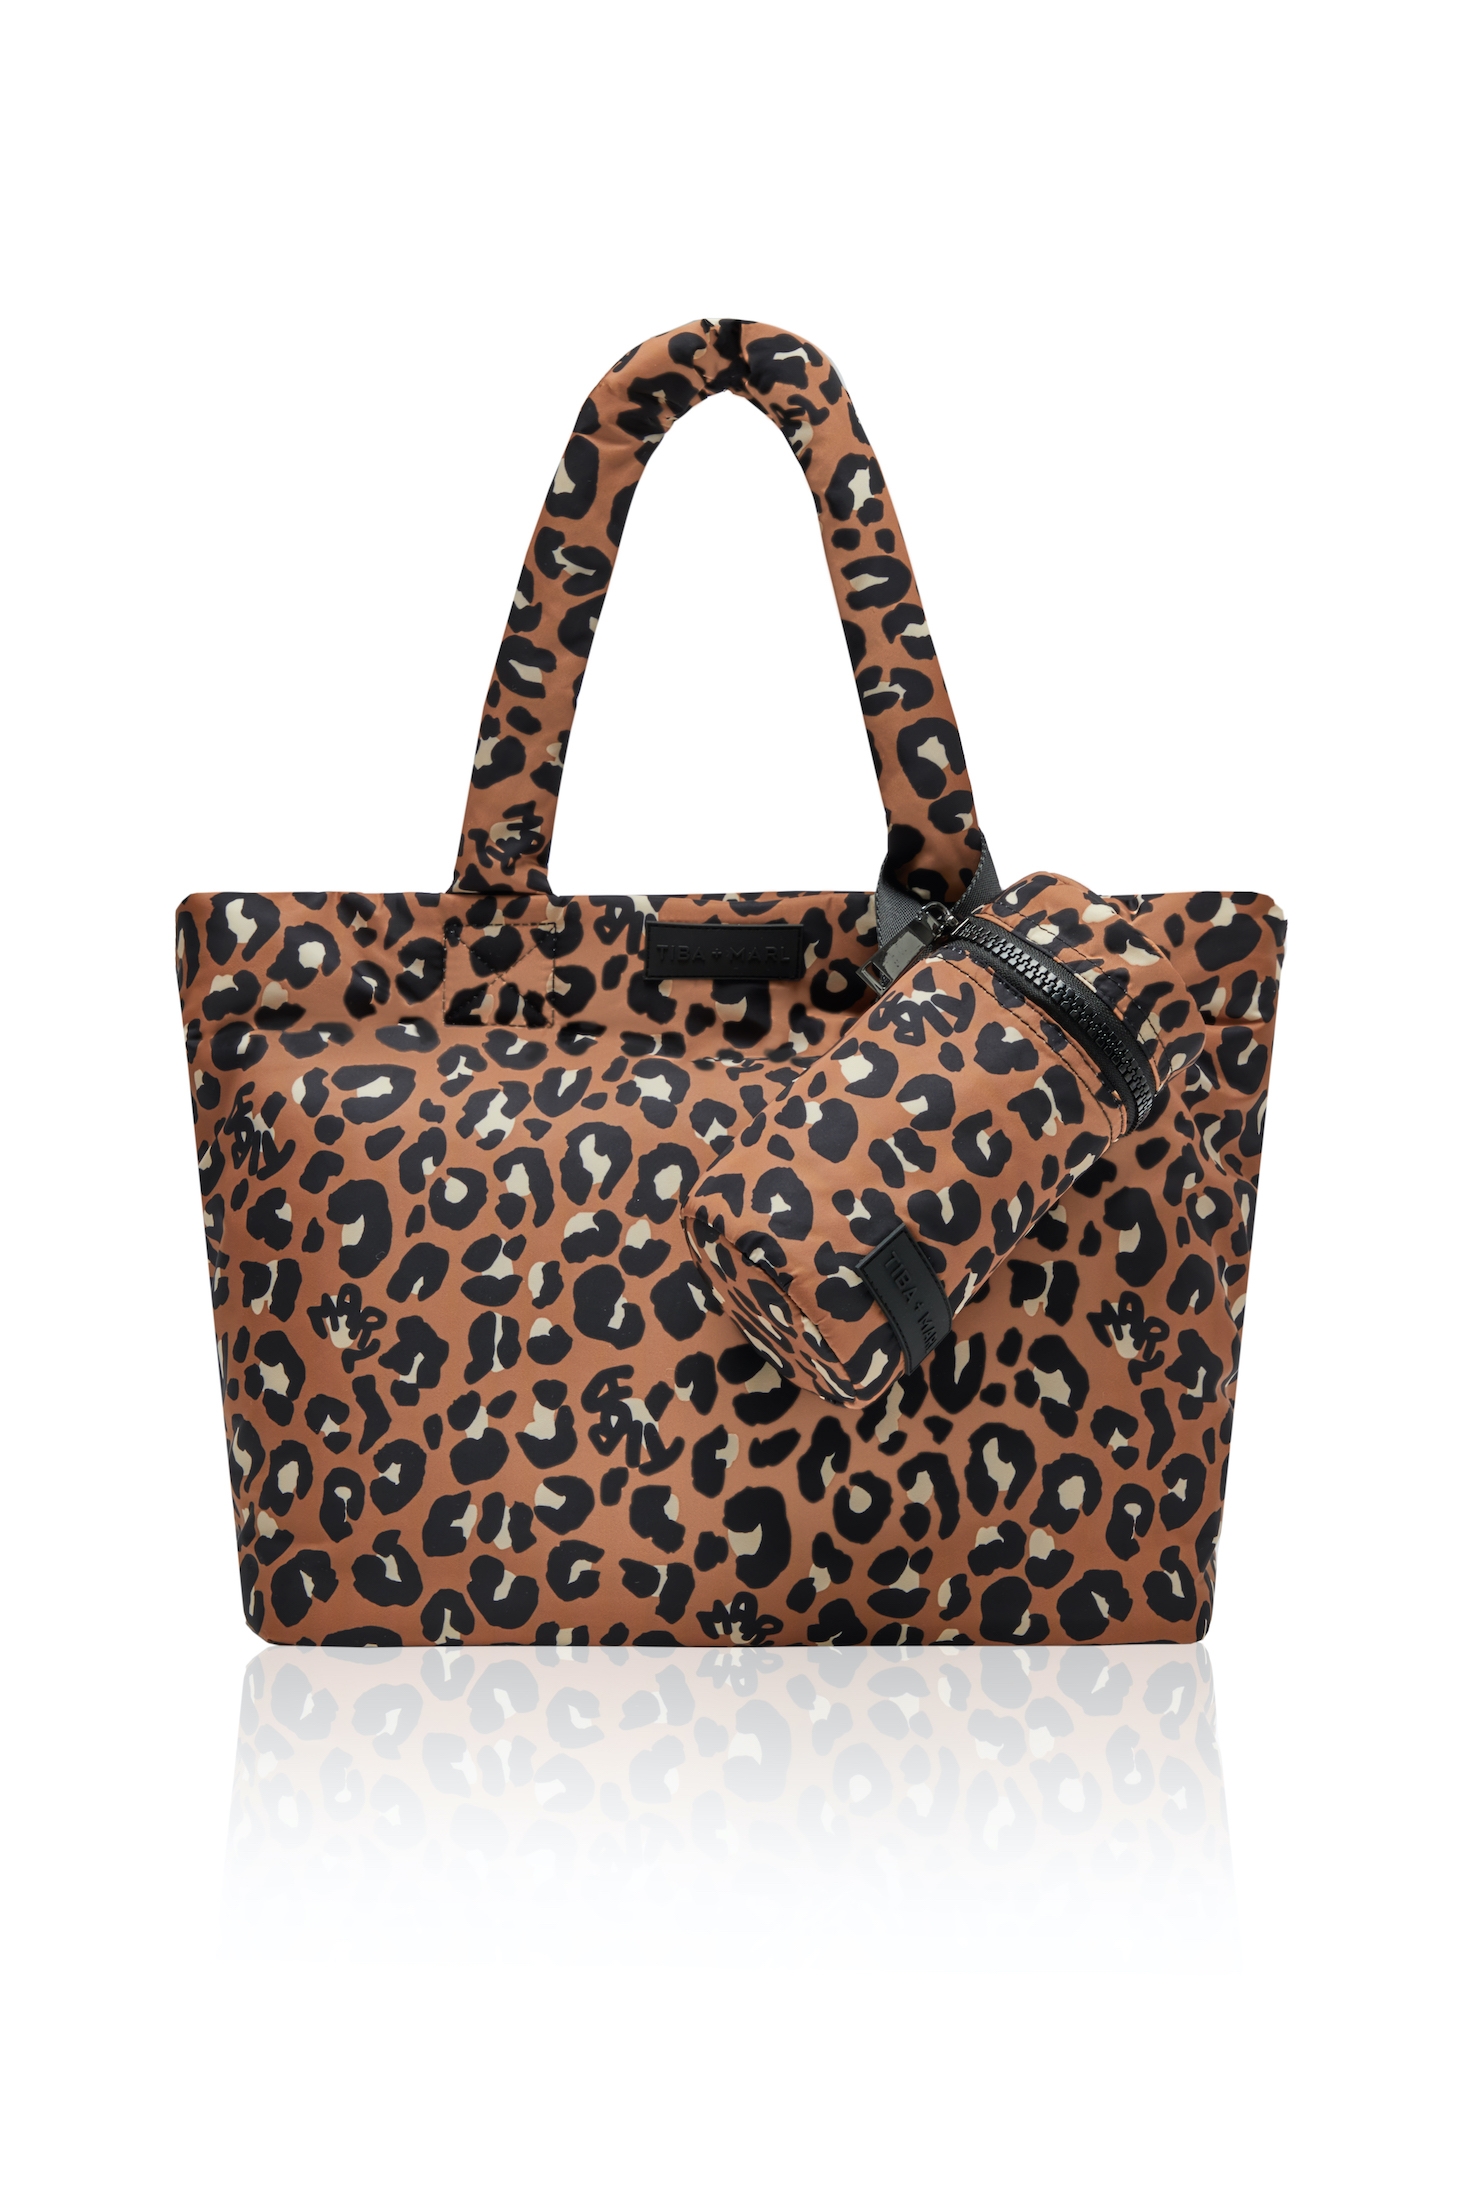 Tiba + Marl – Sumi Puffy Tote – Rust Leopard Print